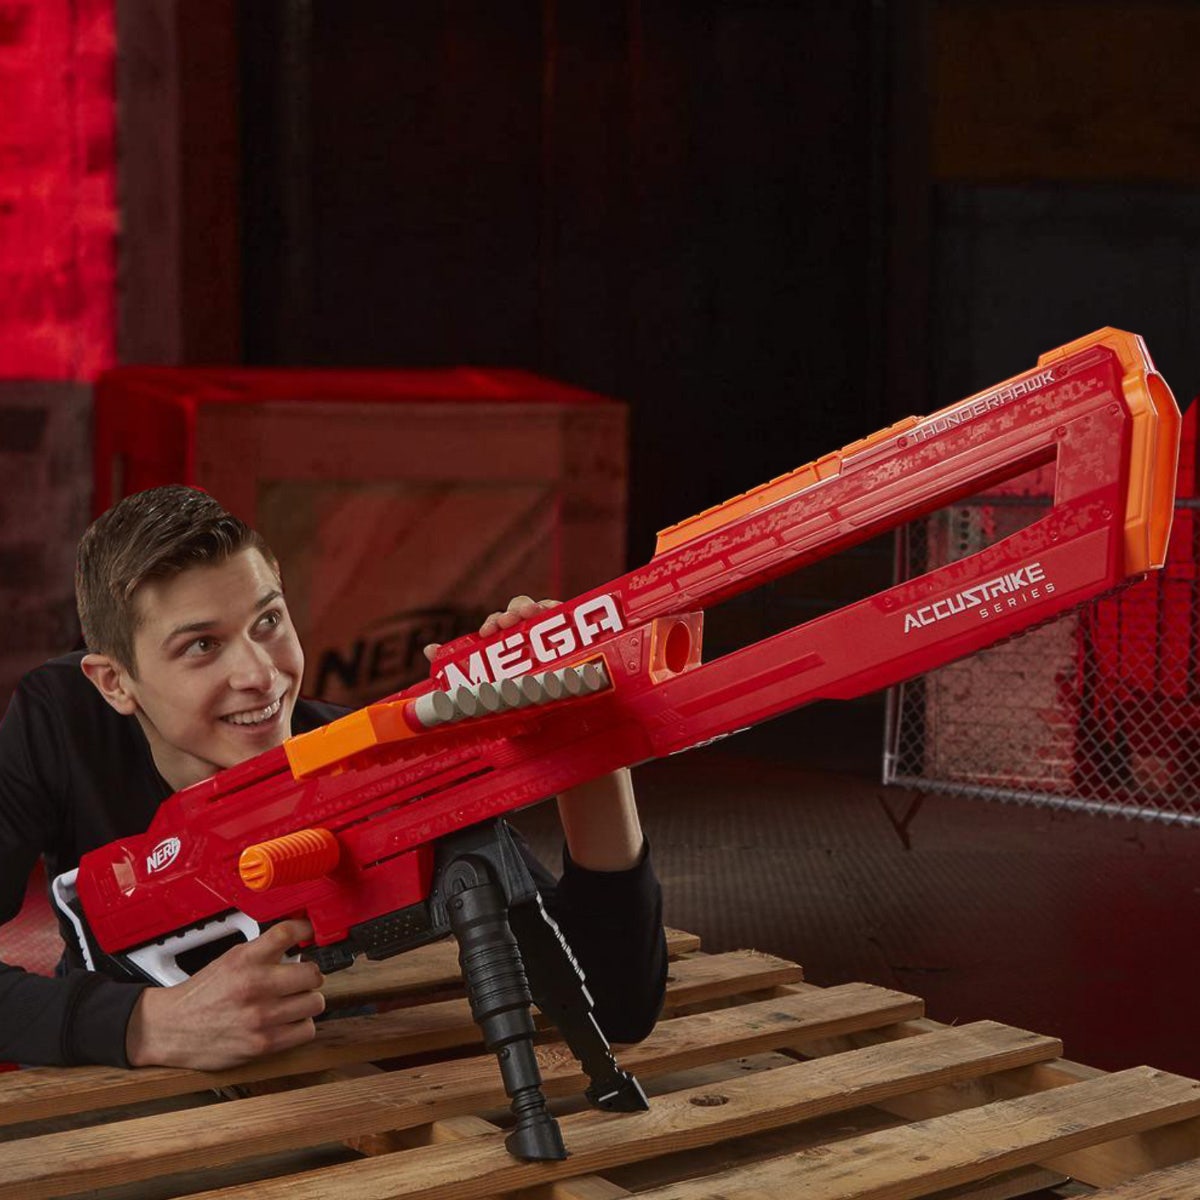 Falde sammen handicap Rejsebureau Nerf Thunderhawk Mega Toy Blaster Dart Gun – AccuStrike Series